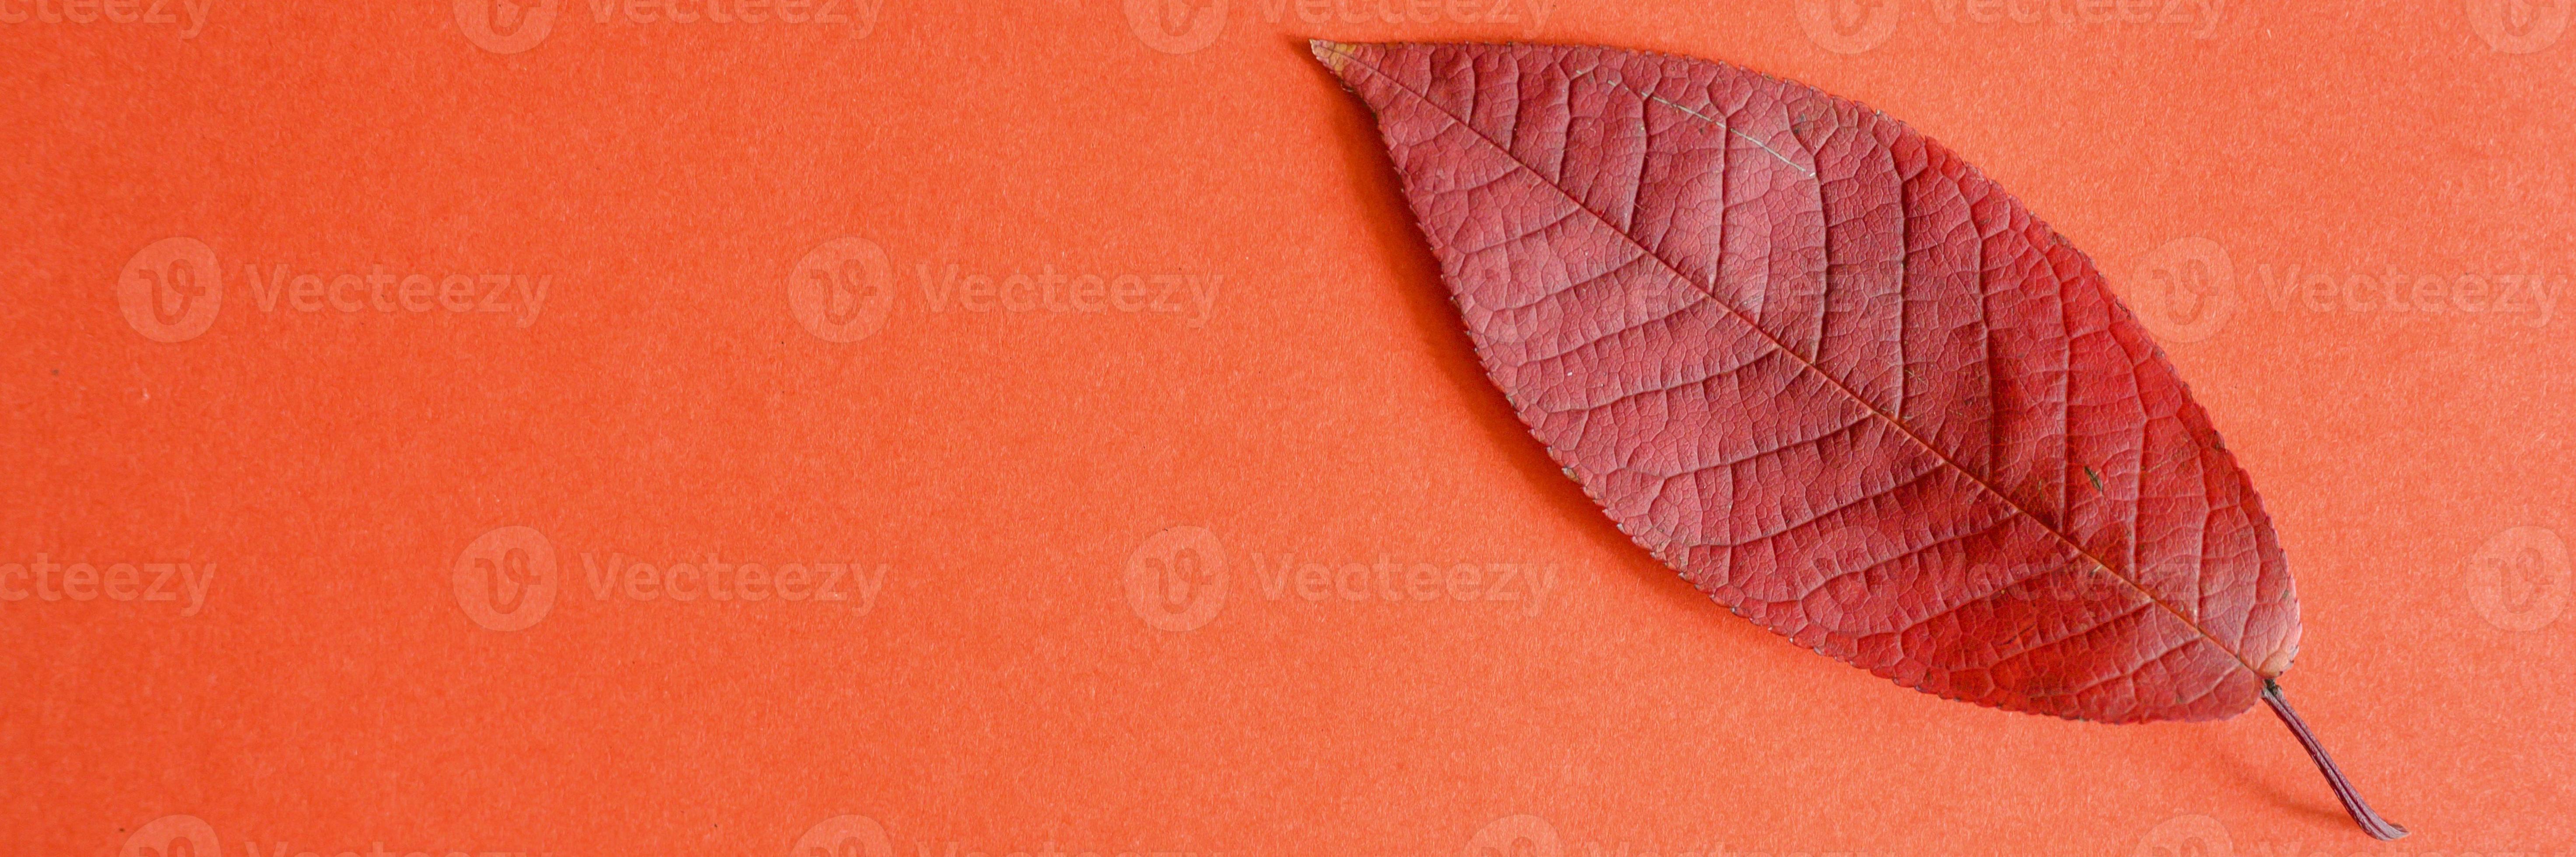 Feuille de cerisier d'automne tombée rouge sur fond de papier rouge photo